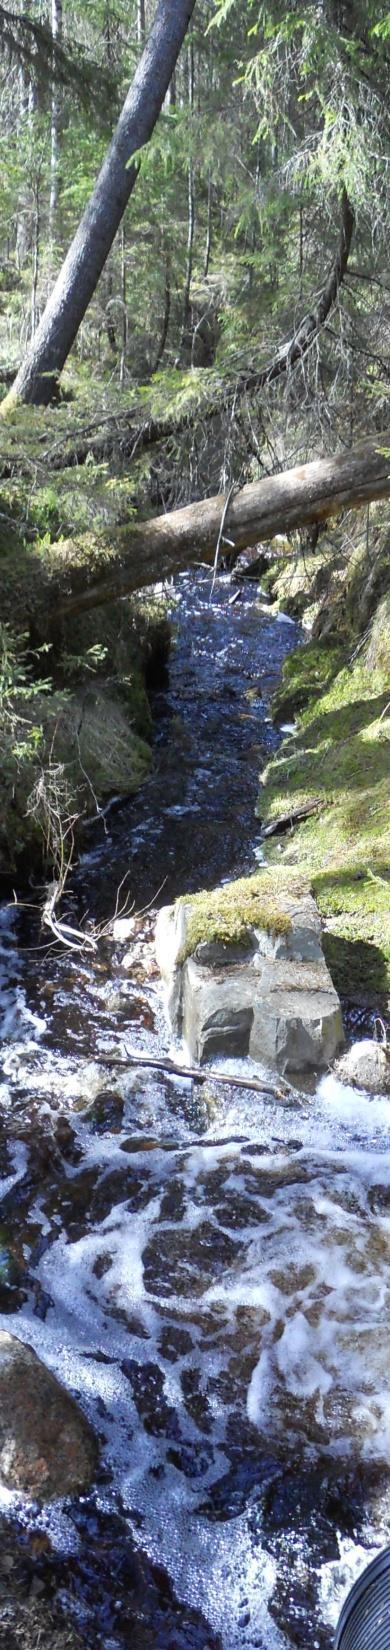 Luonnontilainen valuma-alue (Pyhä-Häkki) Veden laadun seuranta-asema vastaanottaa vedet n. 365 ha luonnontilaiselta valuma-alueelta.